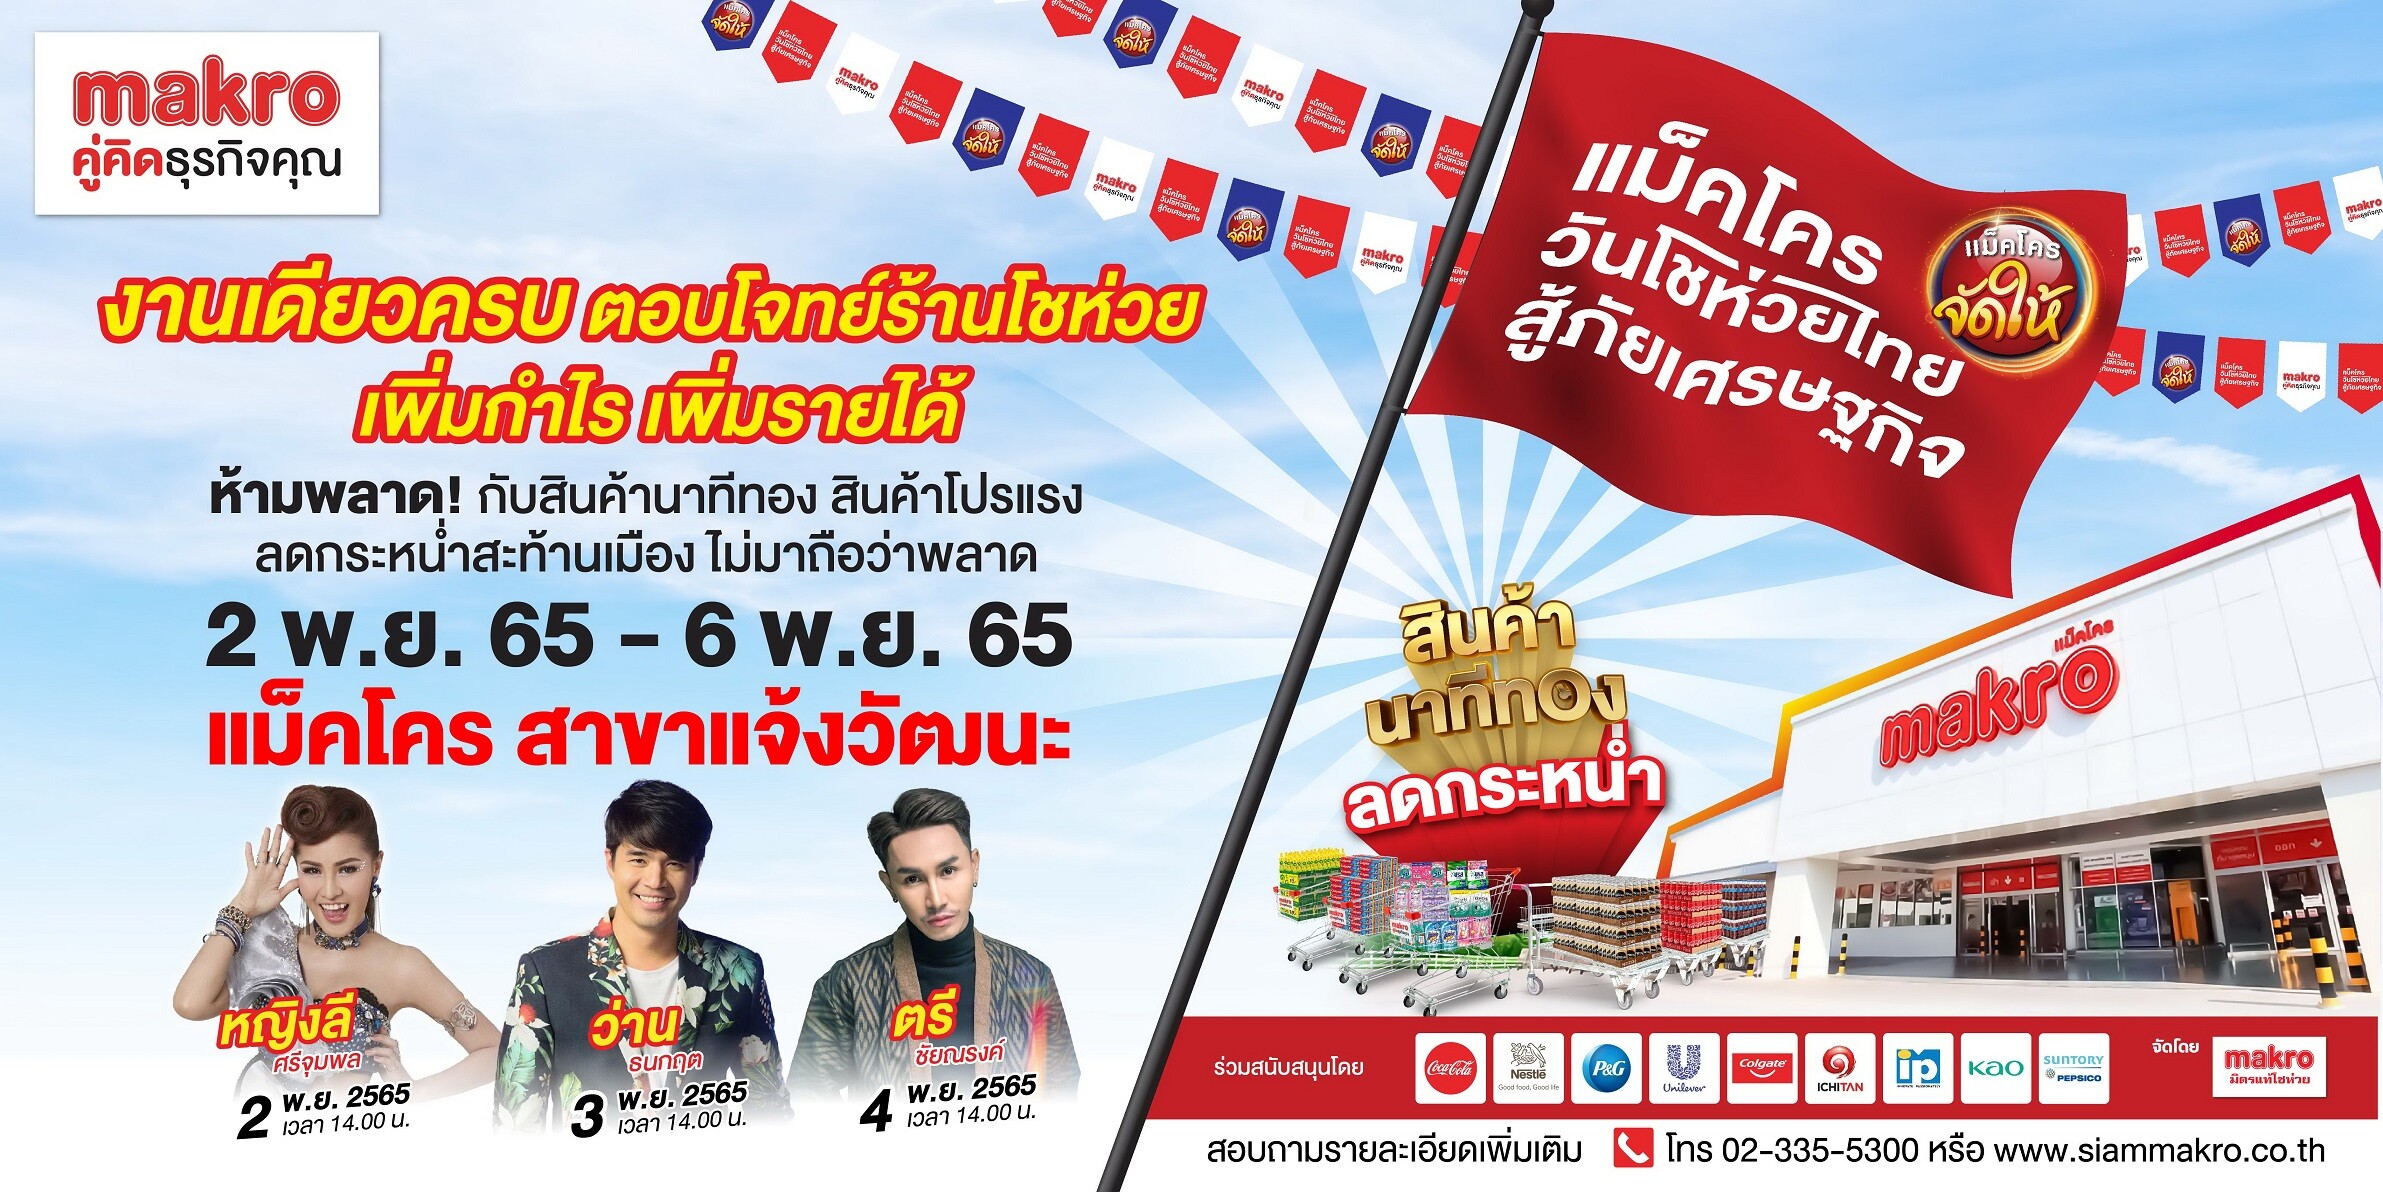 "แม็คโคร วันโชห่วยไทย สู้ภัยเศรษฐกิจ" เริ่ม 2 - 6 พฤศจิกายนนี้